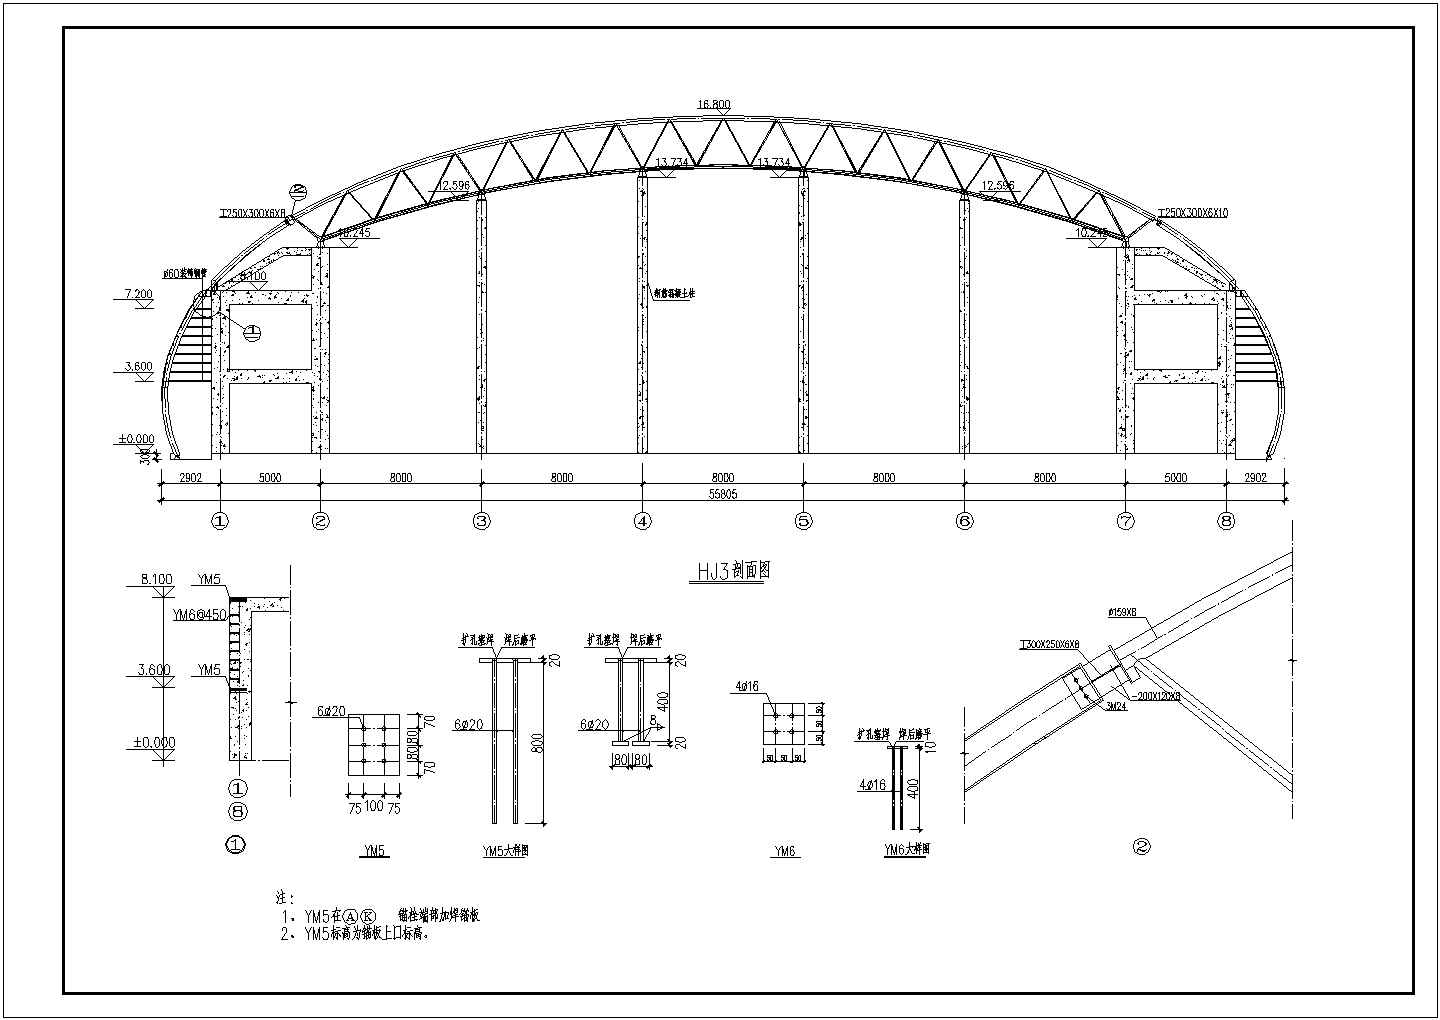 展览馆体育场拱形轻钢屋架全套结构设计CAD图纸